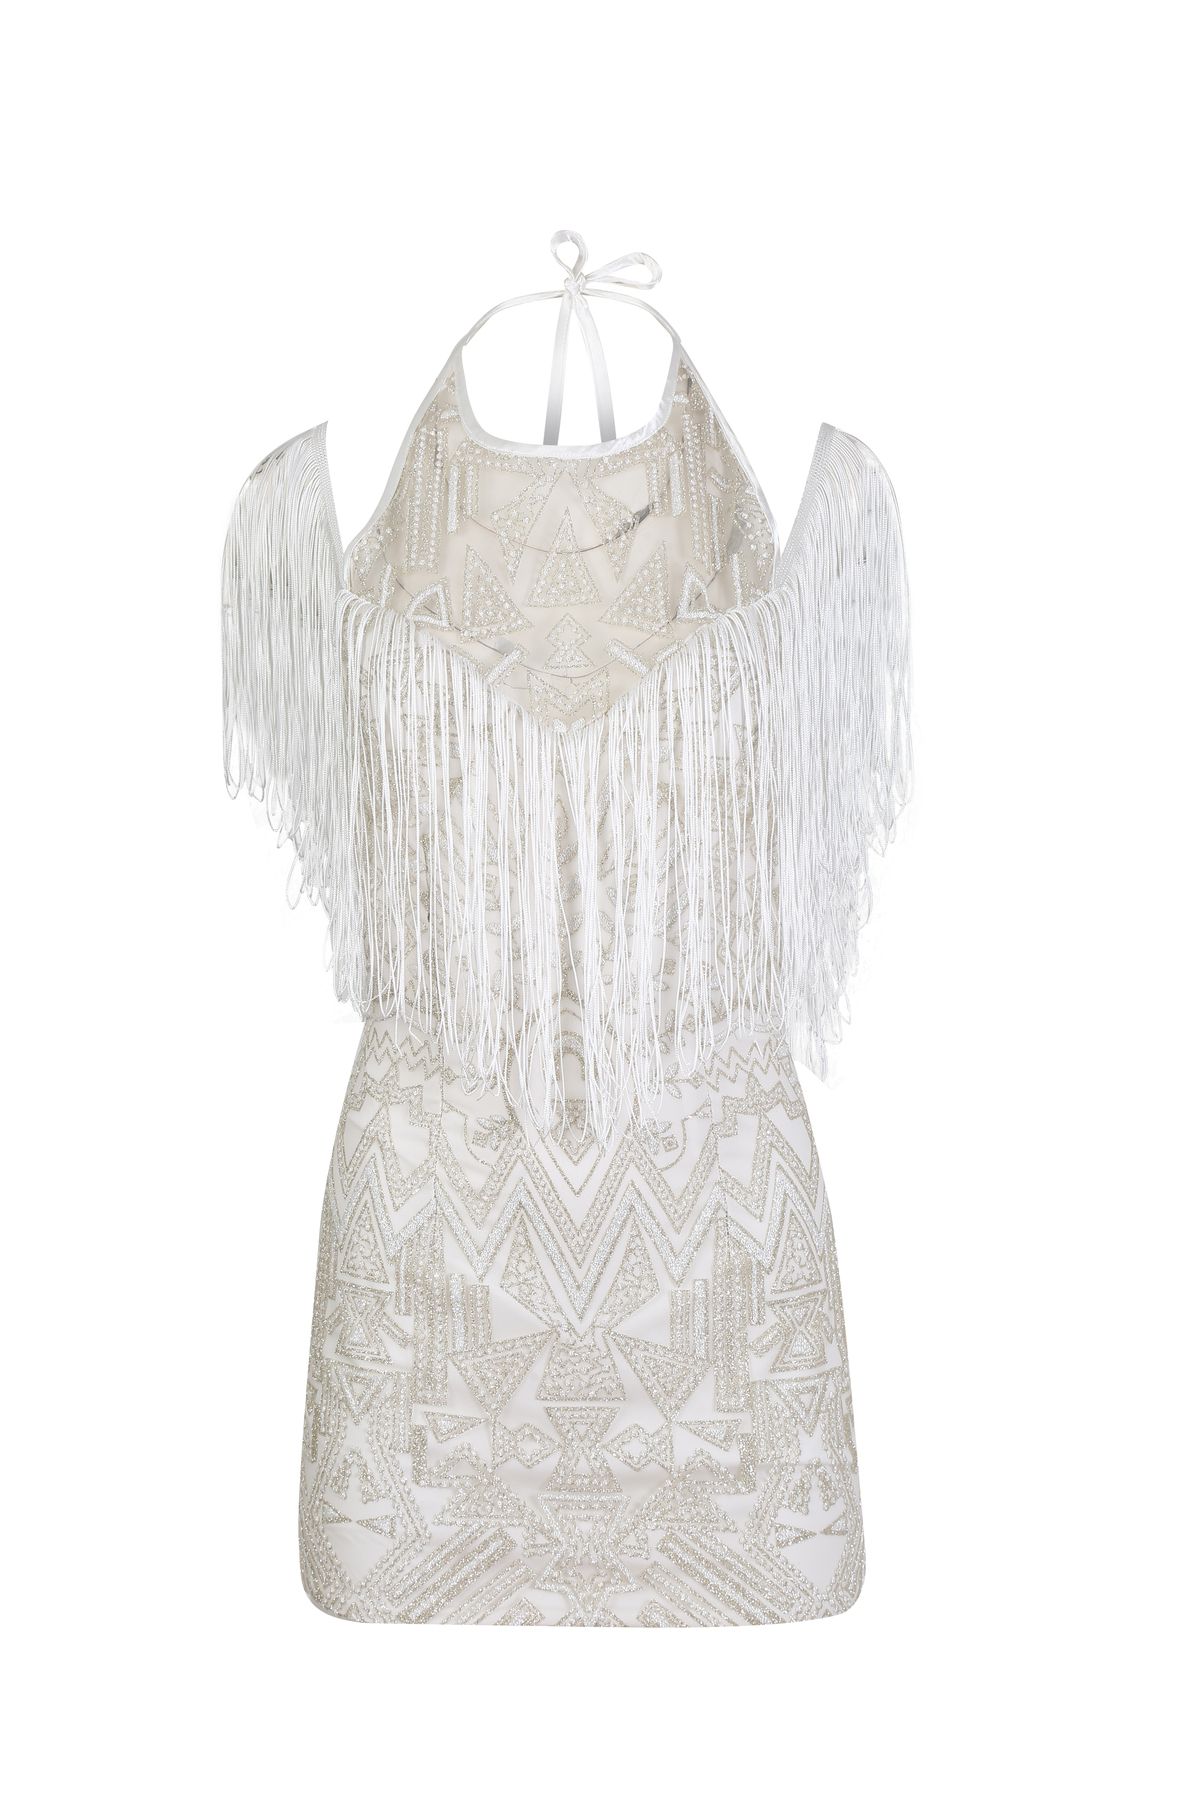 Rheme And Fons Özel Tasarım Couture Püskül Detaylı Simli İç Astarlı Mini Beyaz Ev Çıkış Gelinliği Abiye Elbise